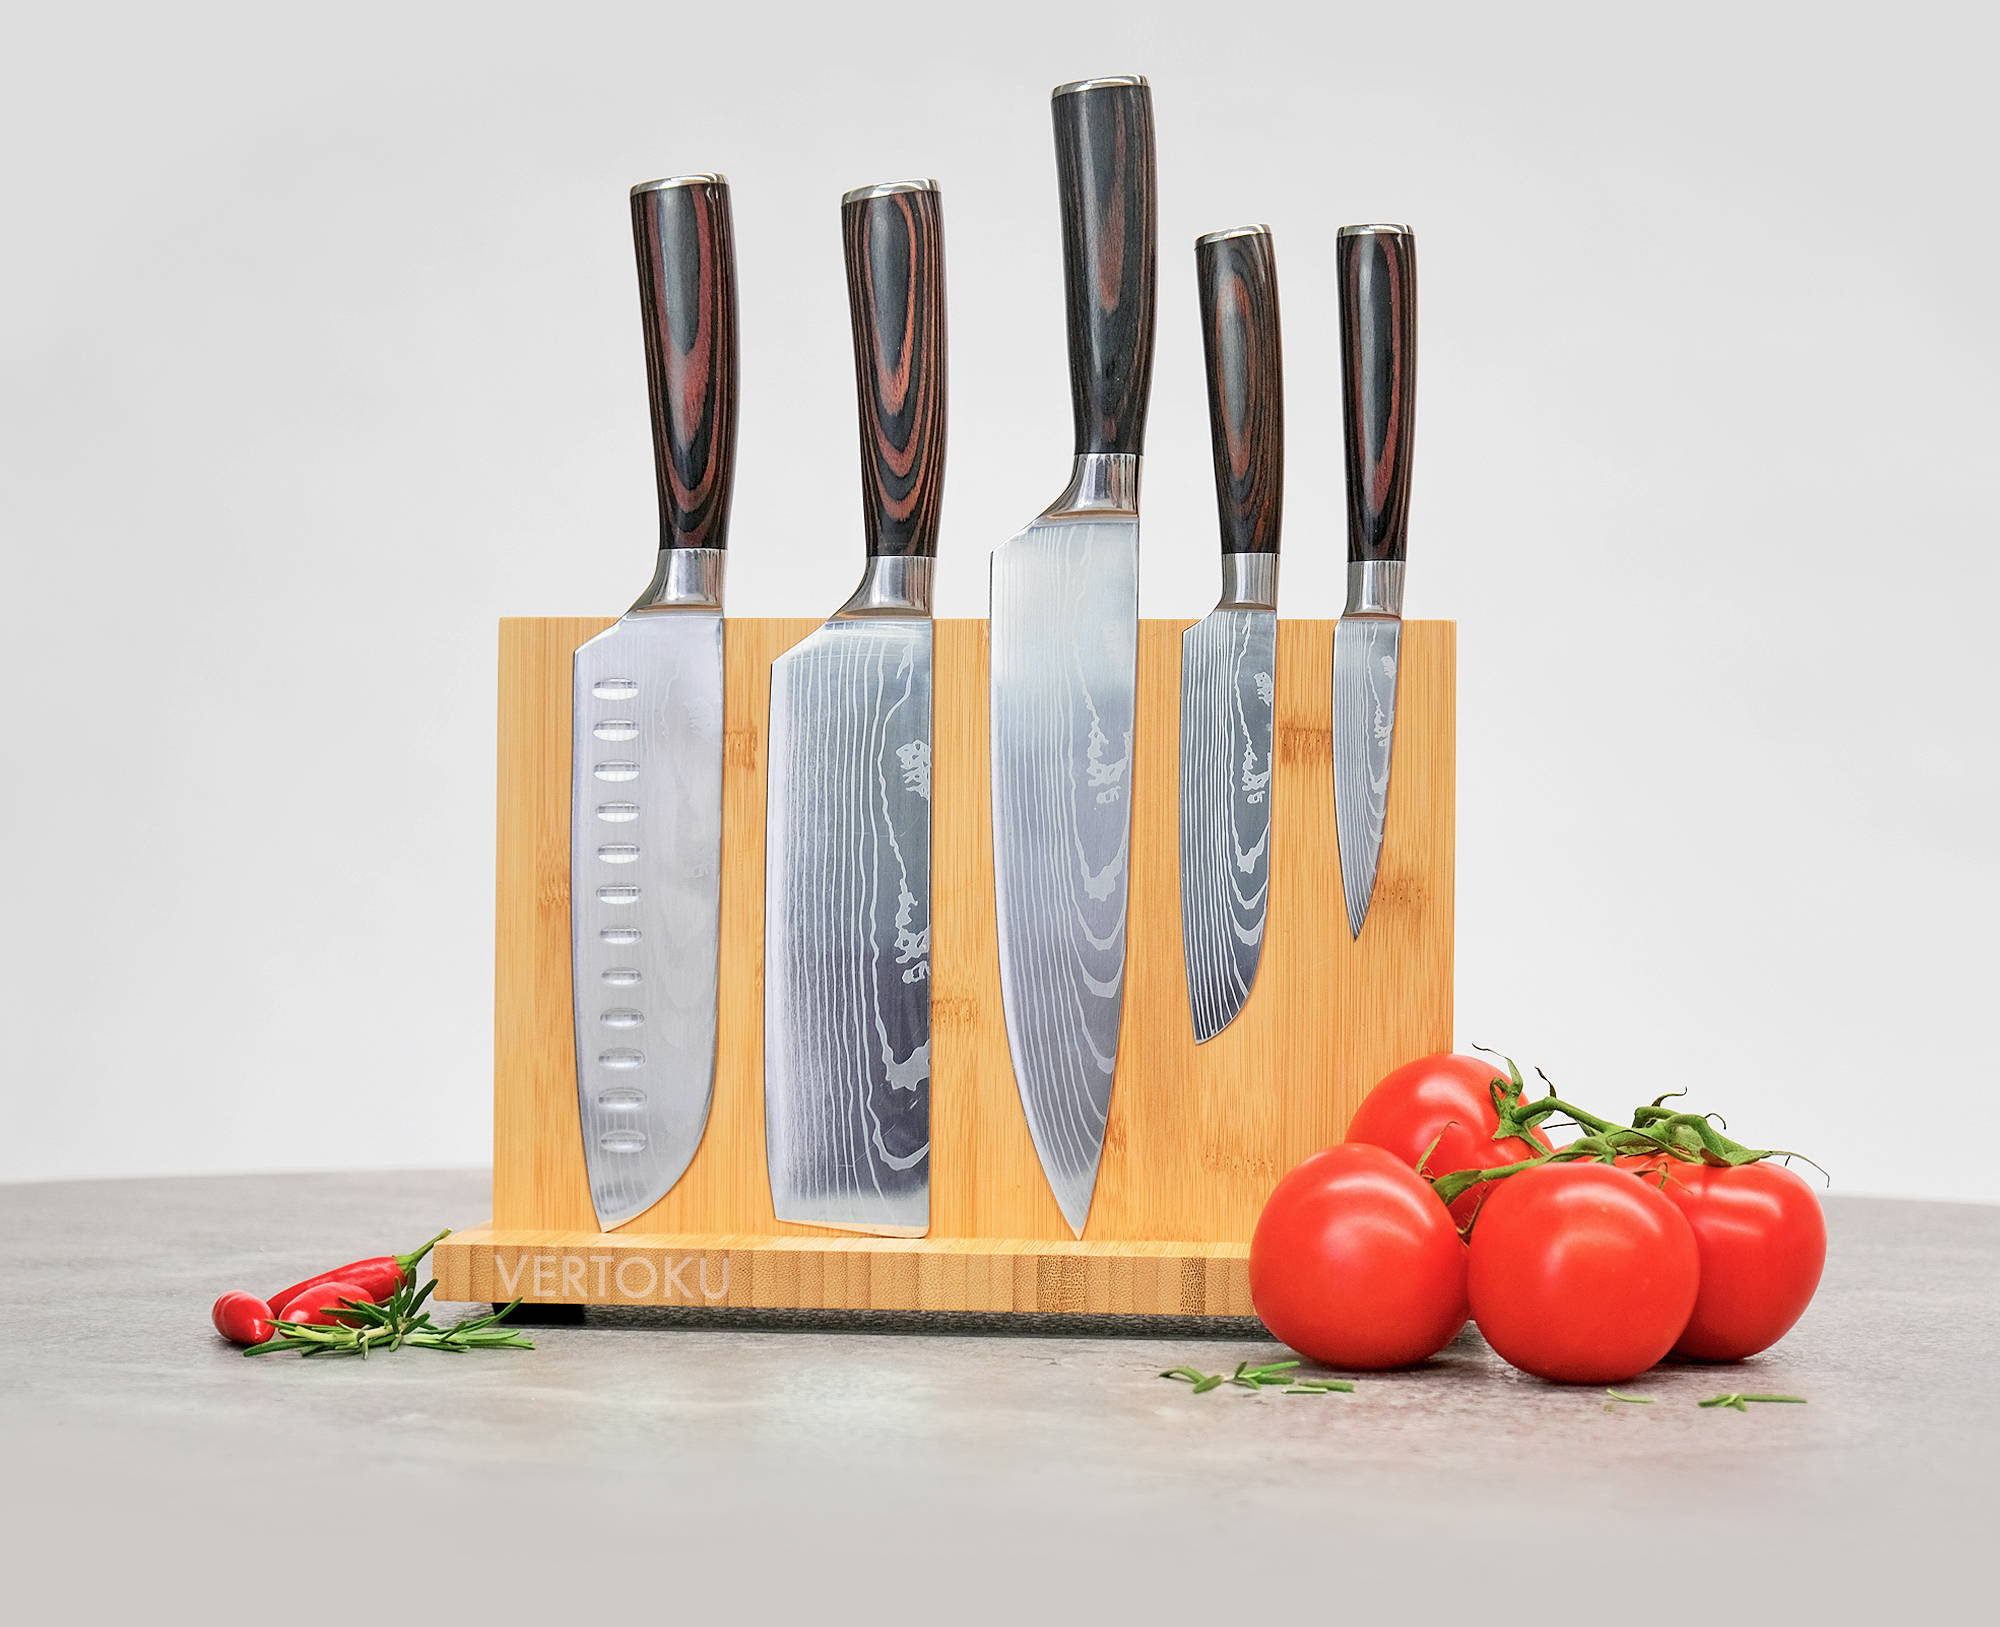 Are Handmade Knives Better? – Vertoku